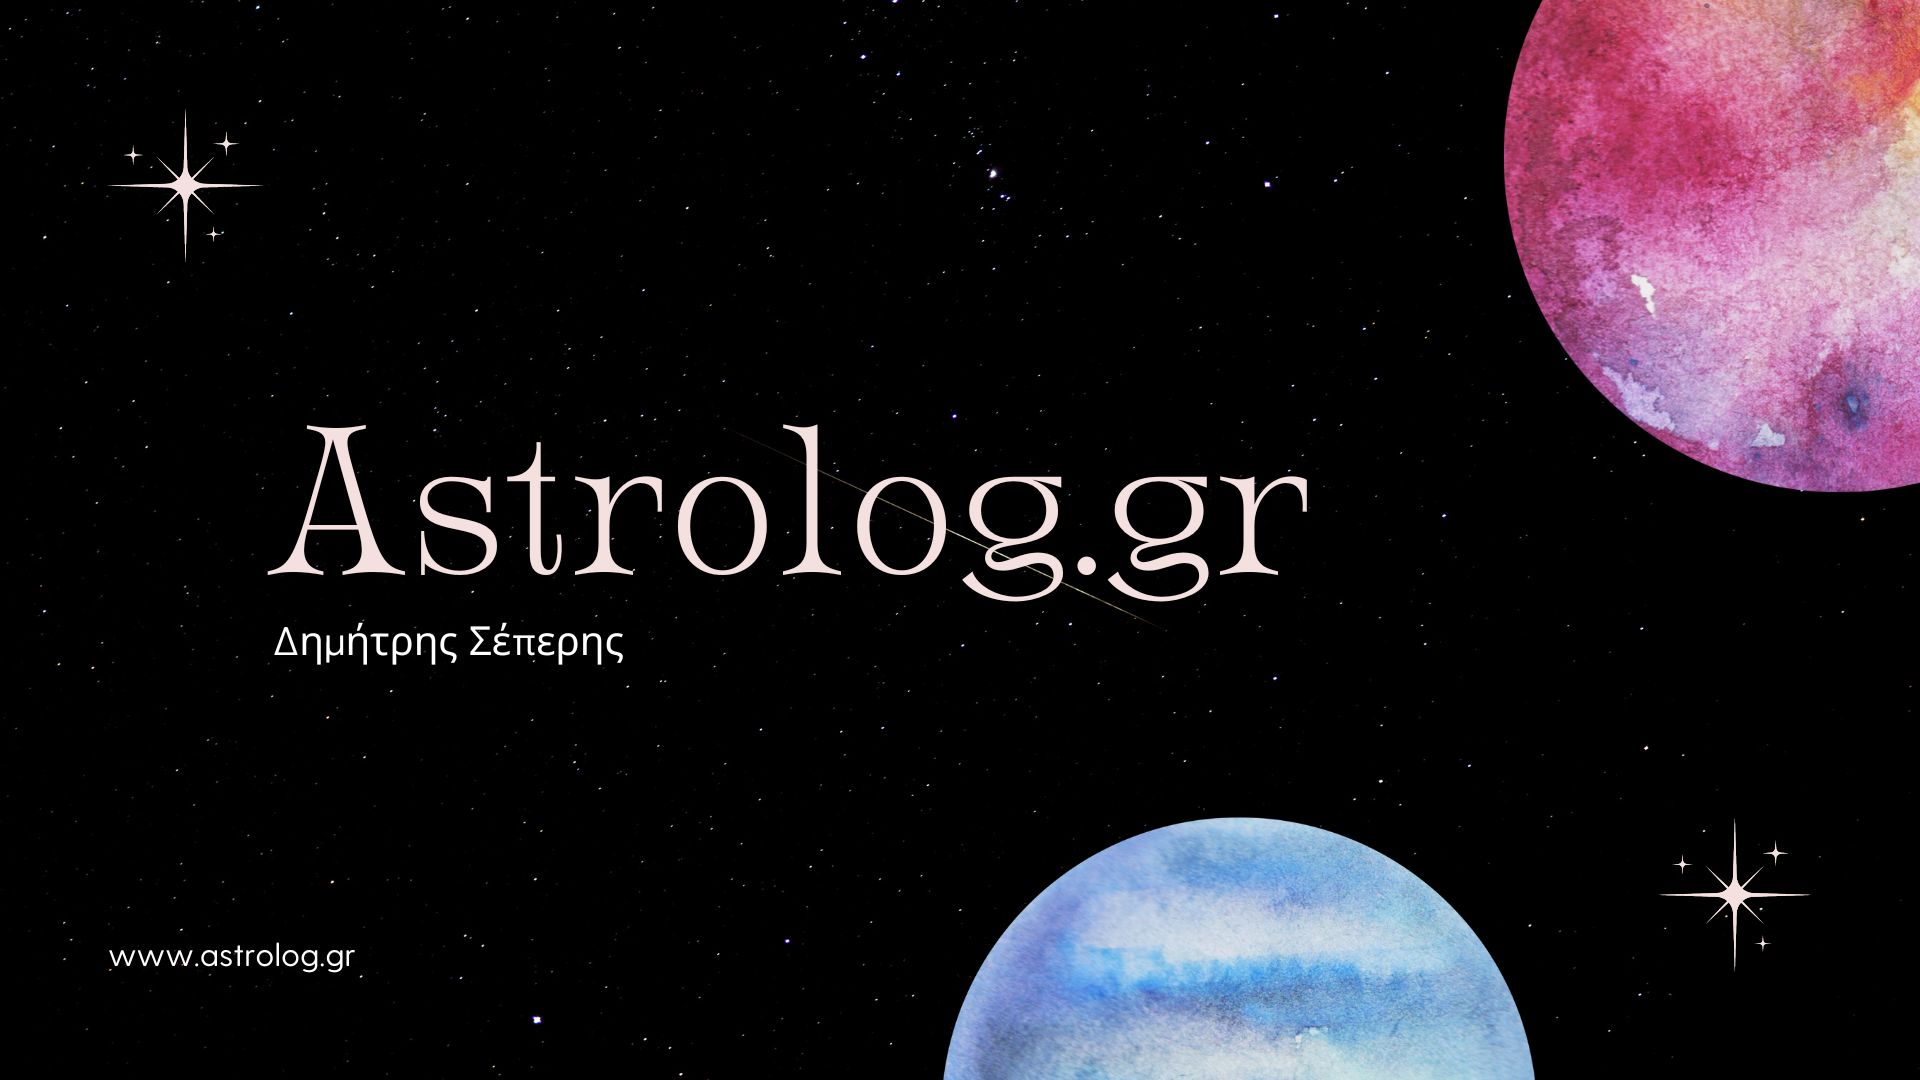 astrolog.gr